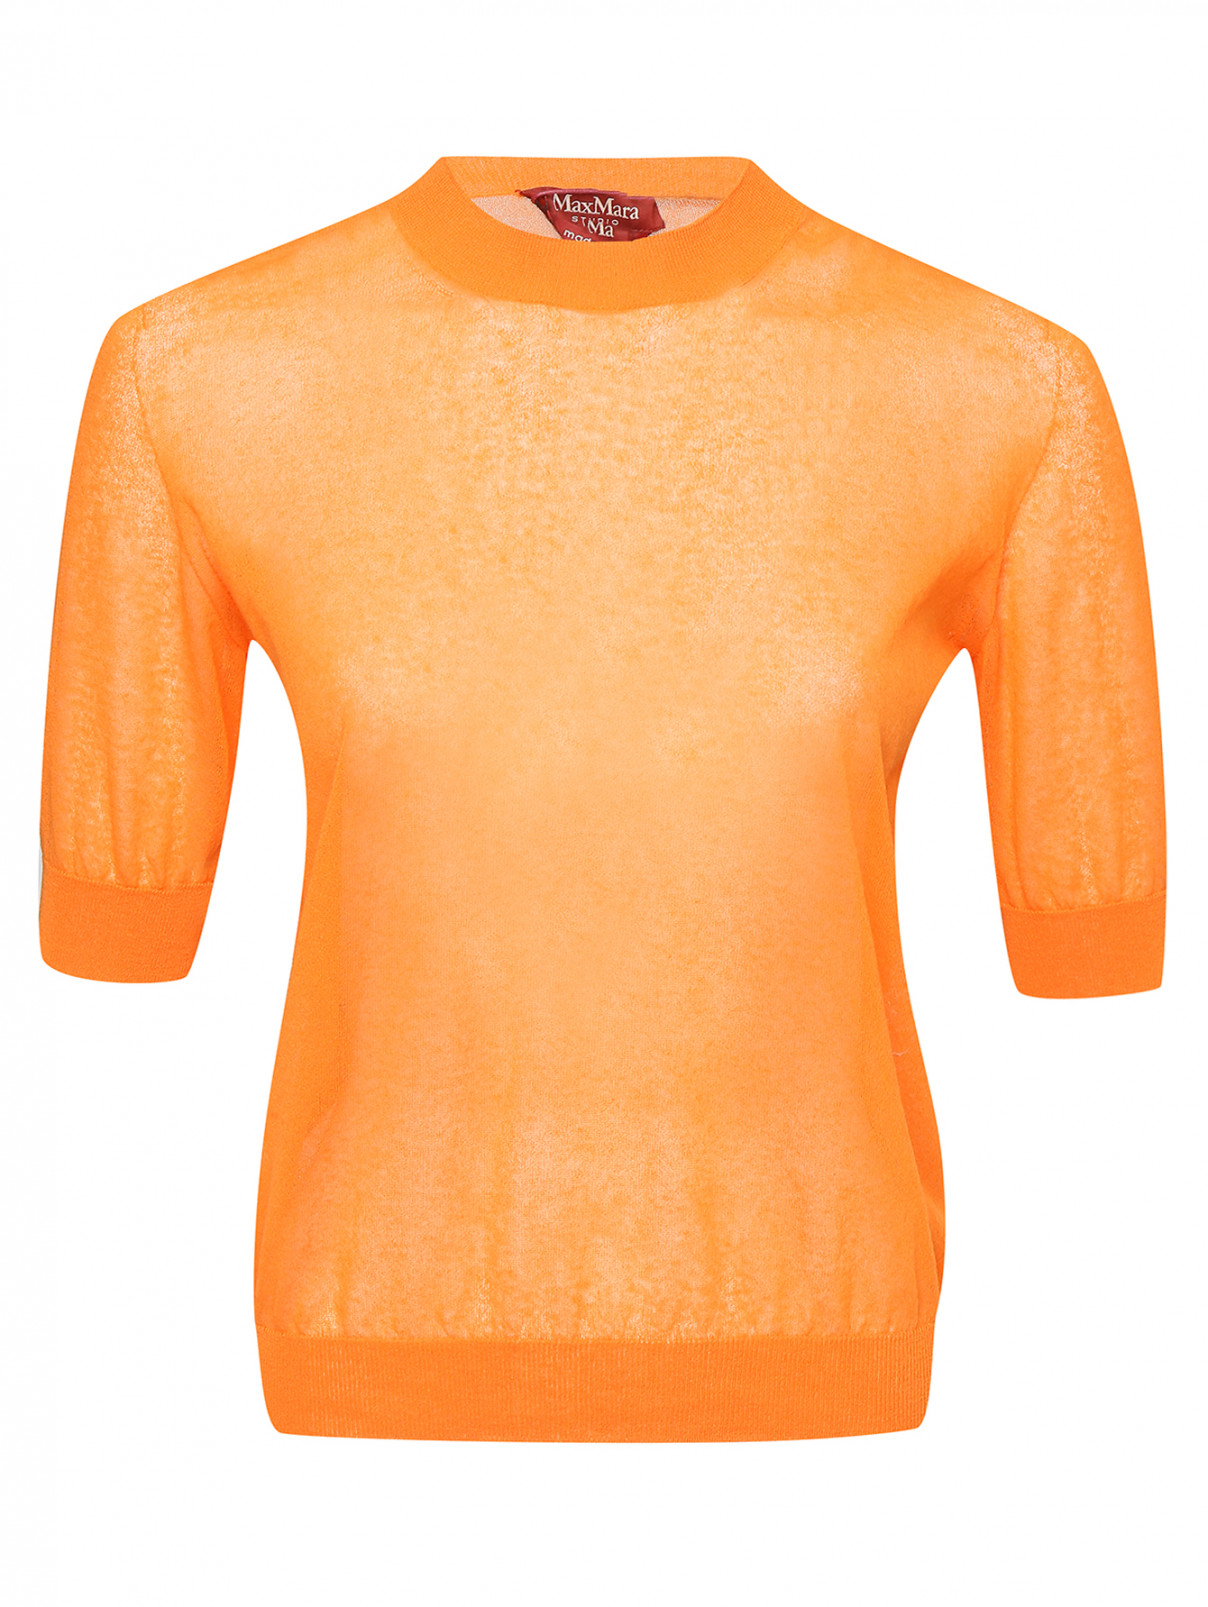 Джемпер из хлопка Max Mara  –  Общий вид  – Цвет:  Оранжевый